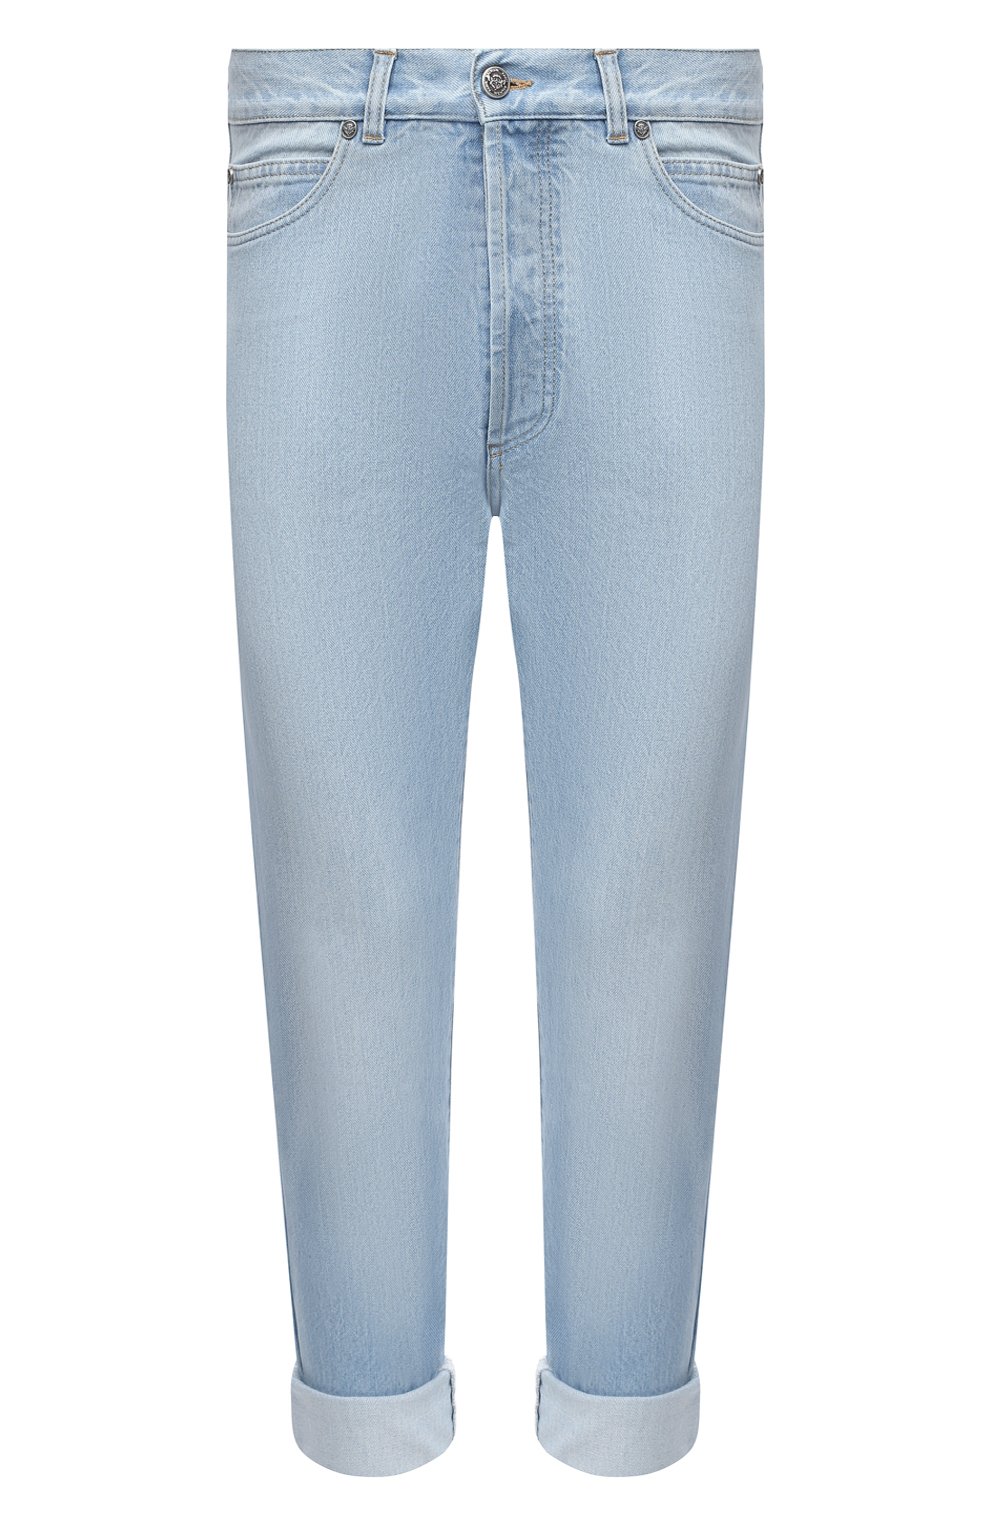 Мужские джинсы BALMAIN голубого цвета, арт. VH1MM000/119D | Фото 1 (Силуэт М (брюки): Прямые; Кросс-КТ: Деним; Материал внешний: Хлопок; Длина (брюки, джинсы): Укороченные; Стили: Кэжуэл)